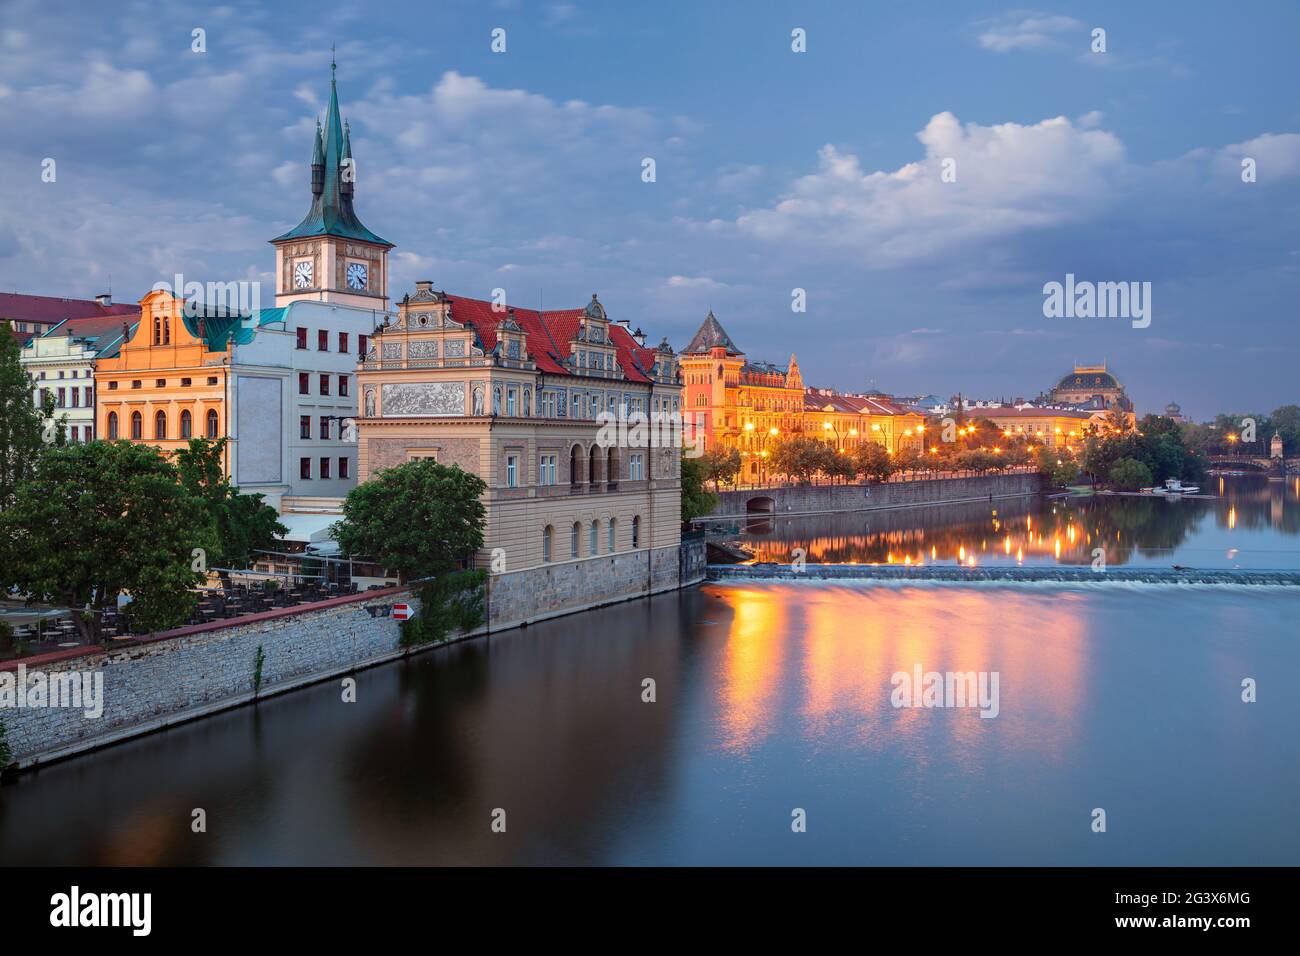 Riverside di Praga. Immagine del paesaggio urbano del lungofiume di Praga con la Torre dell'acqua della Città Vecchia all'ora blu del crepuscolo. Foto Stock